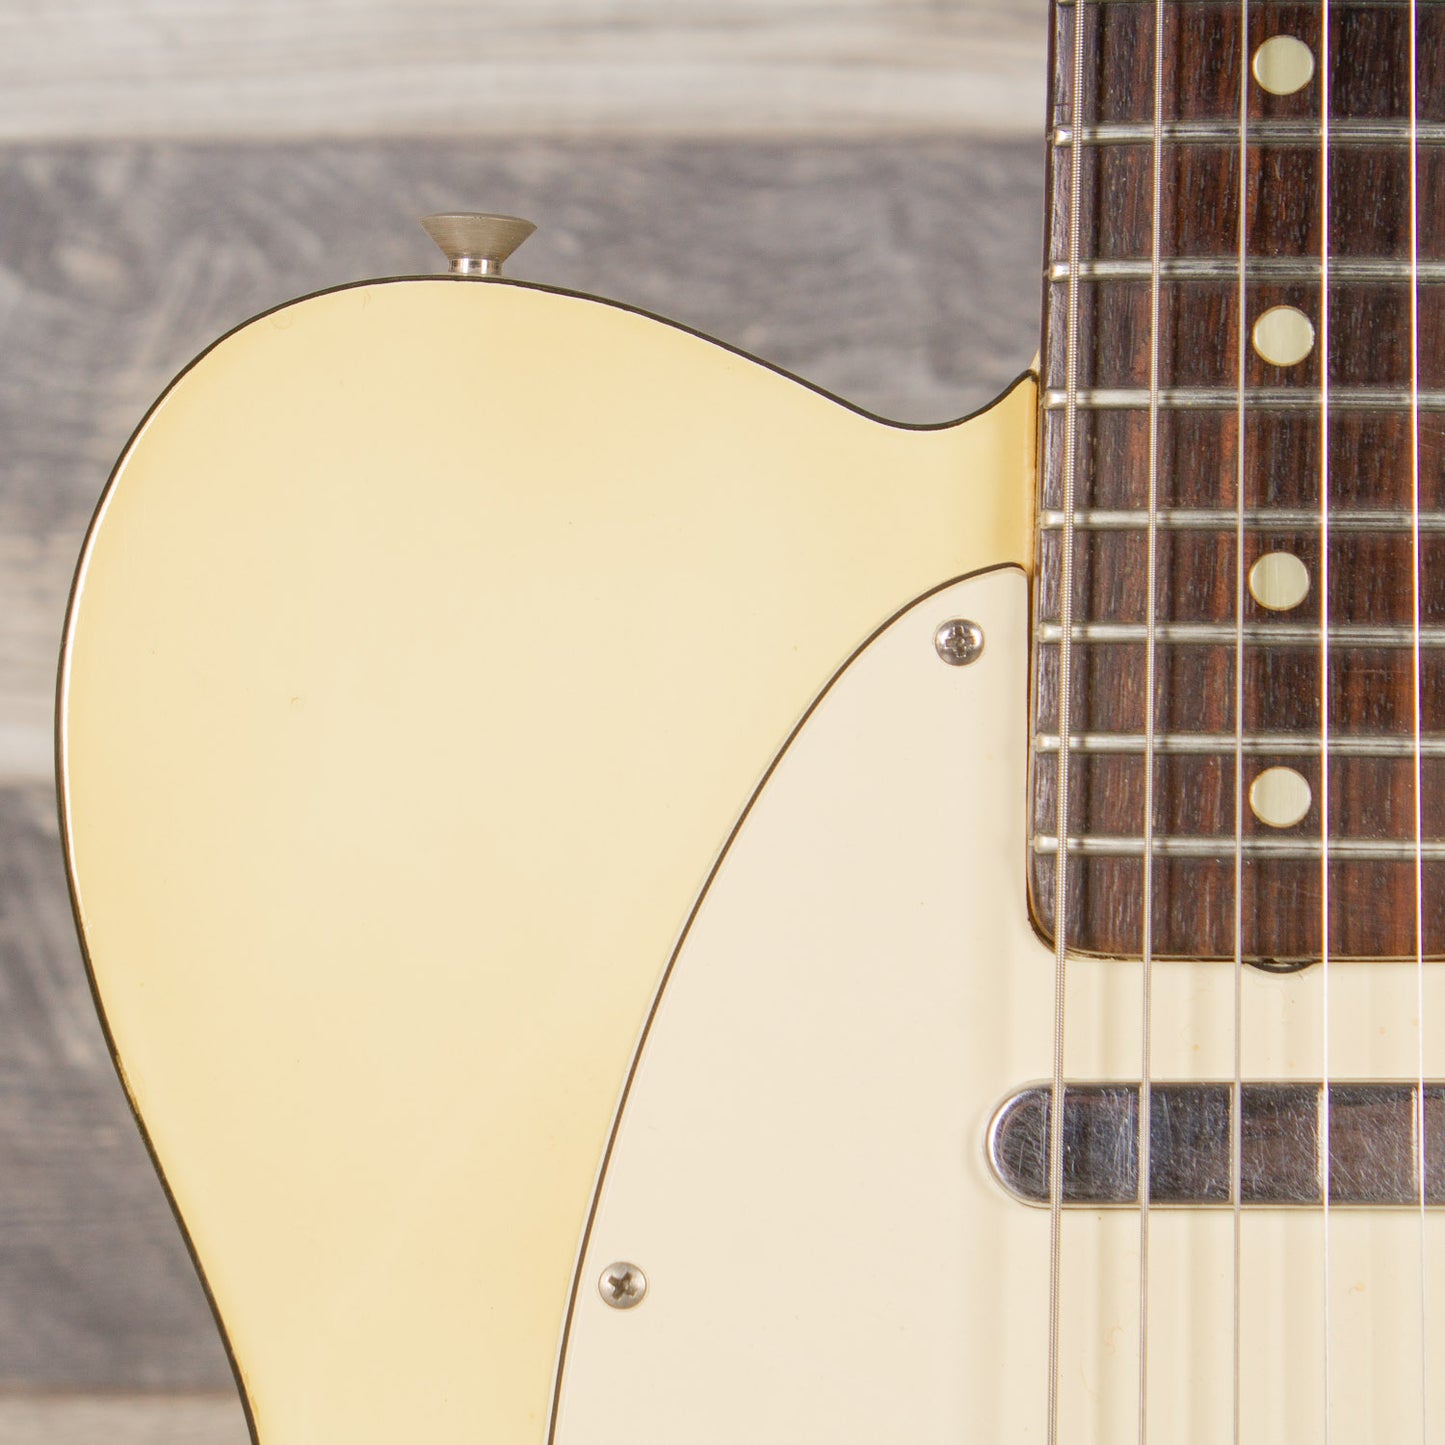 1971 Fender Telecaster Custom - Olympic White/Black Binding